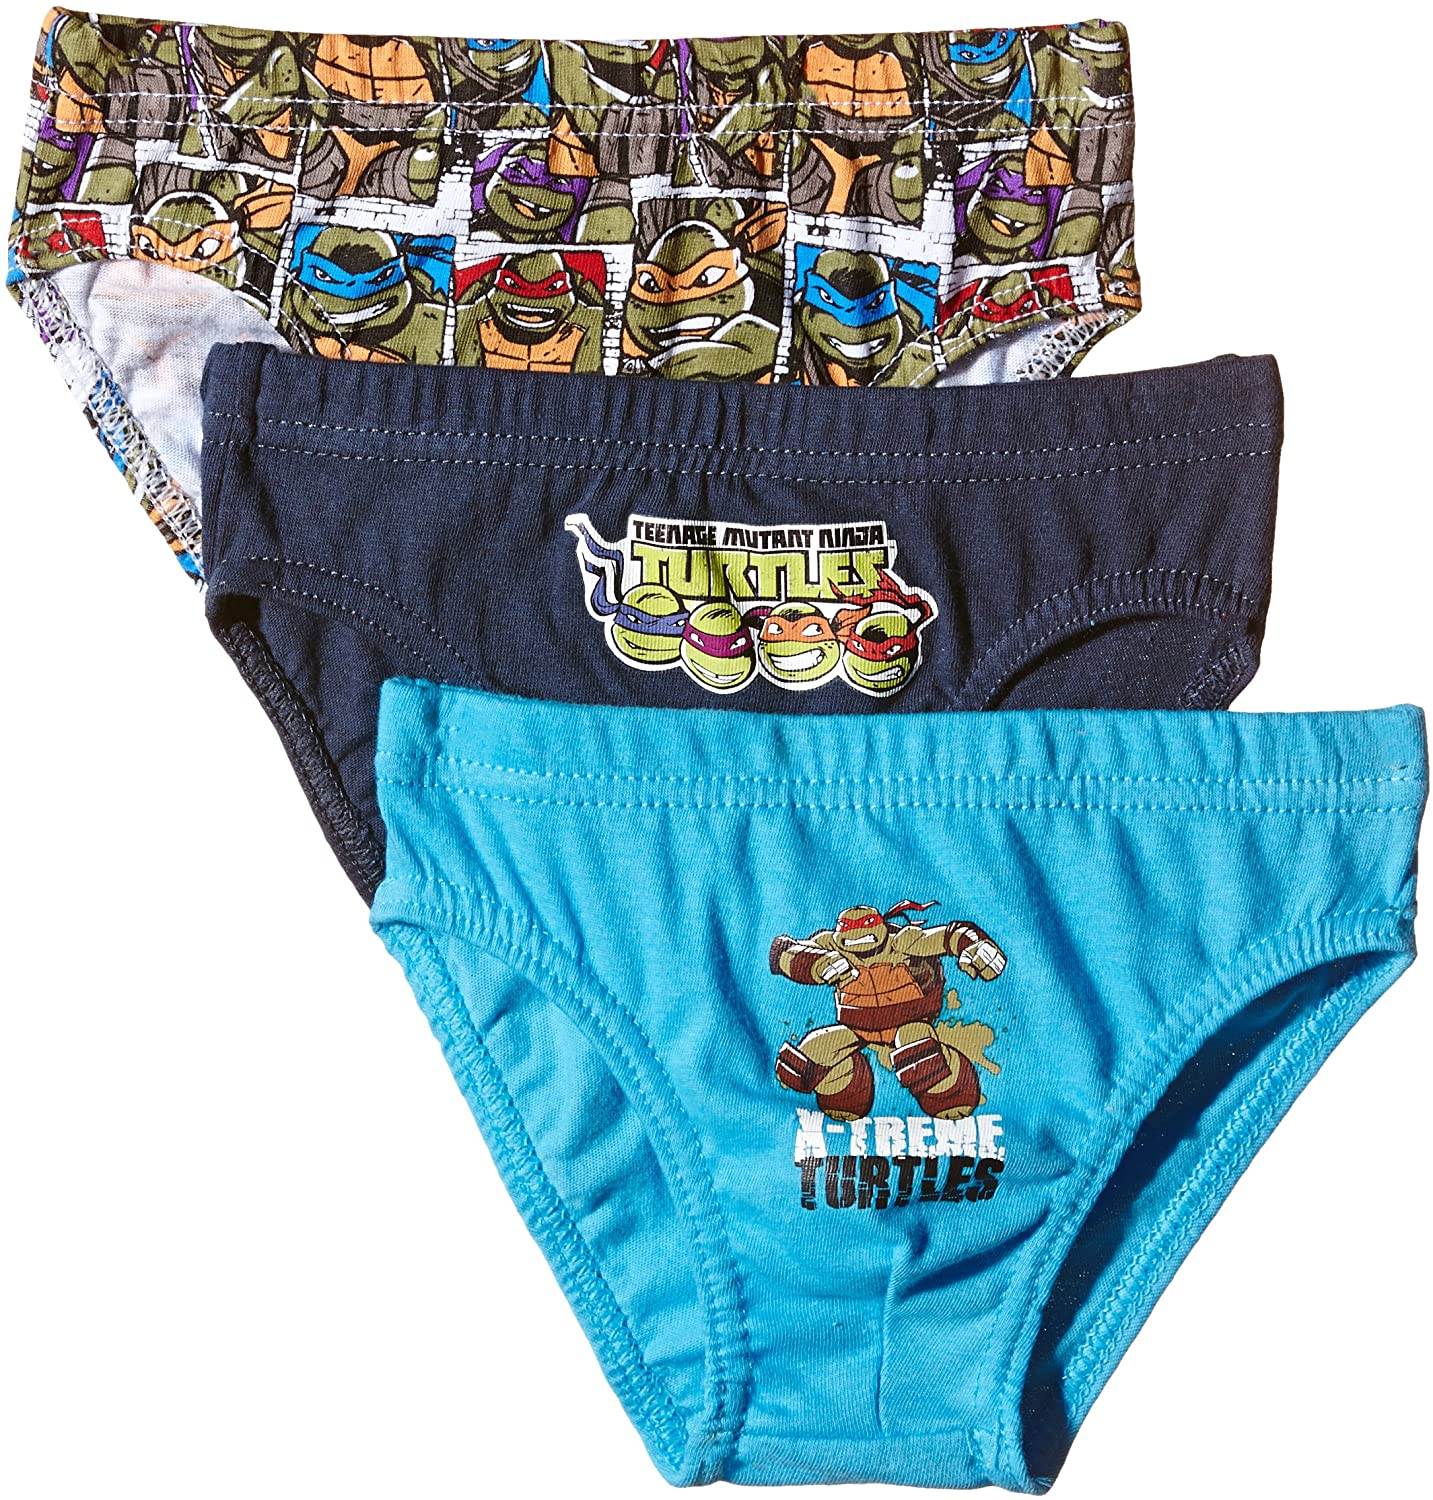 Turtles boy's panties